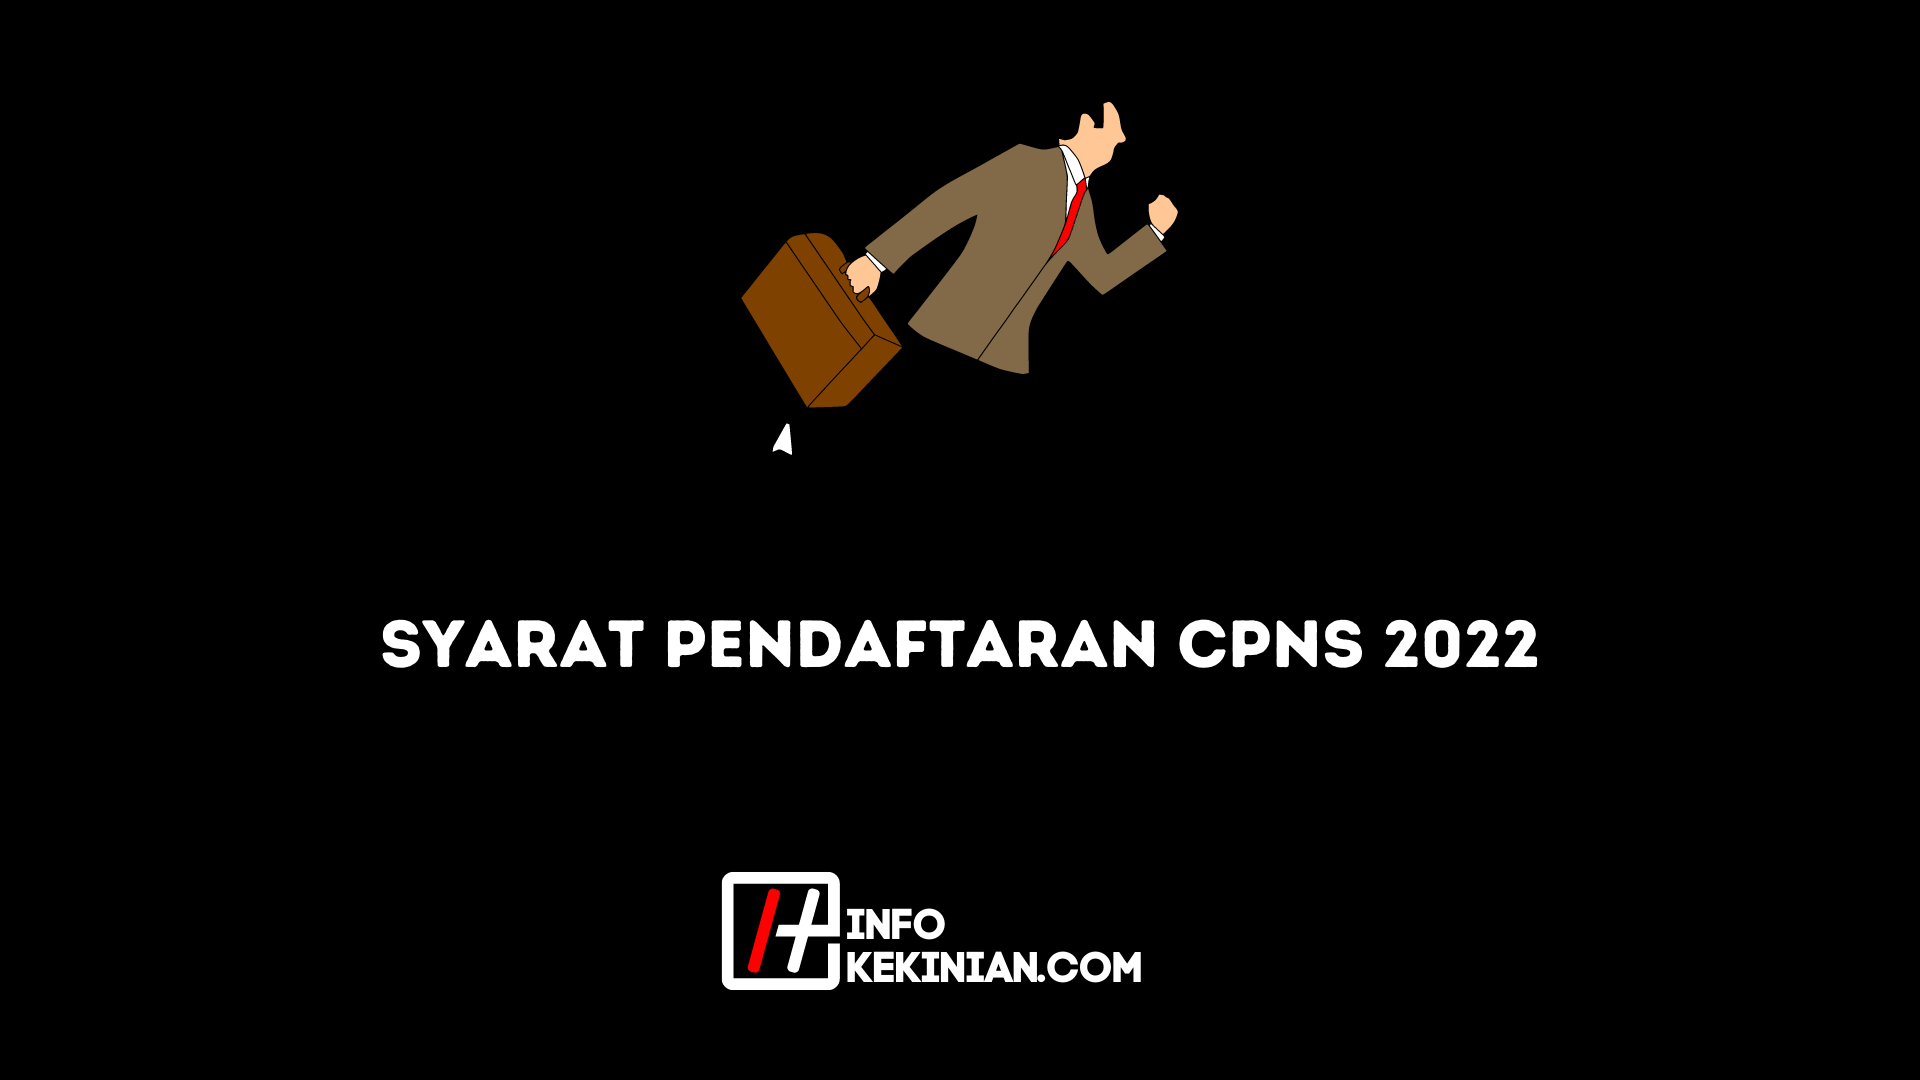 Wymagania rejestracyjne CPNS 2022